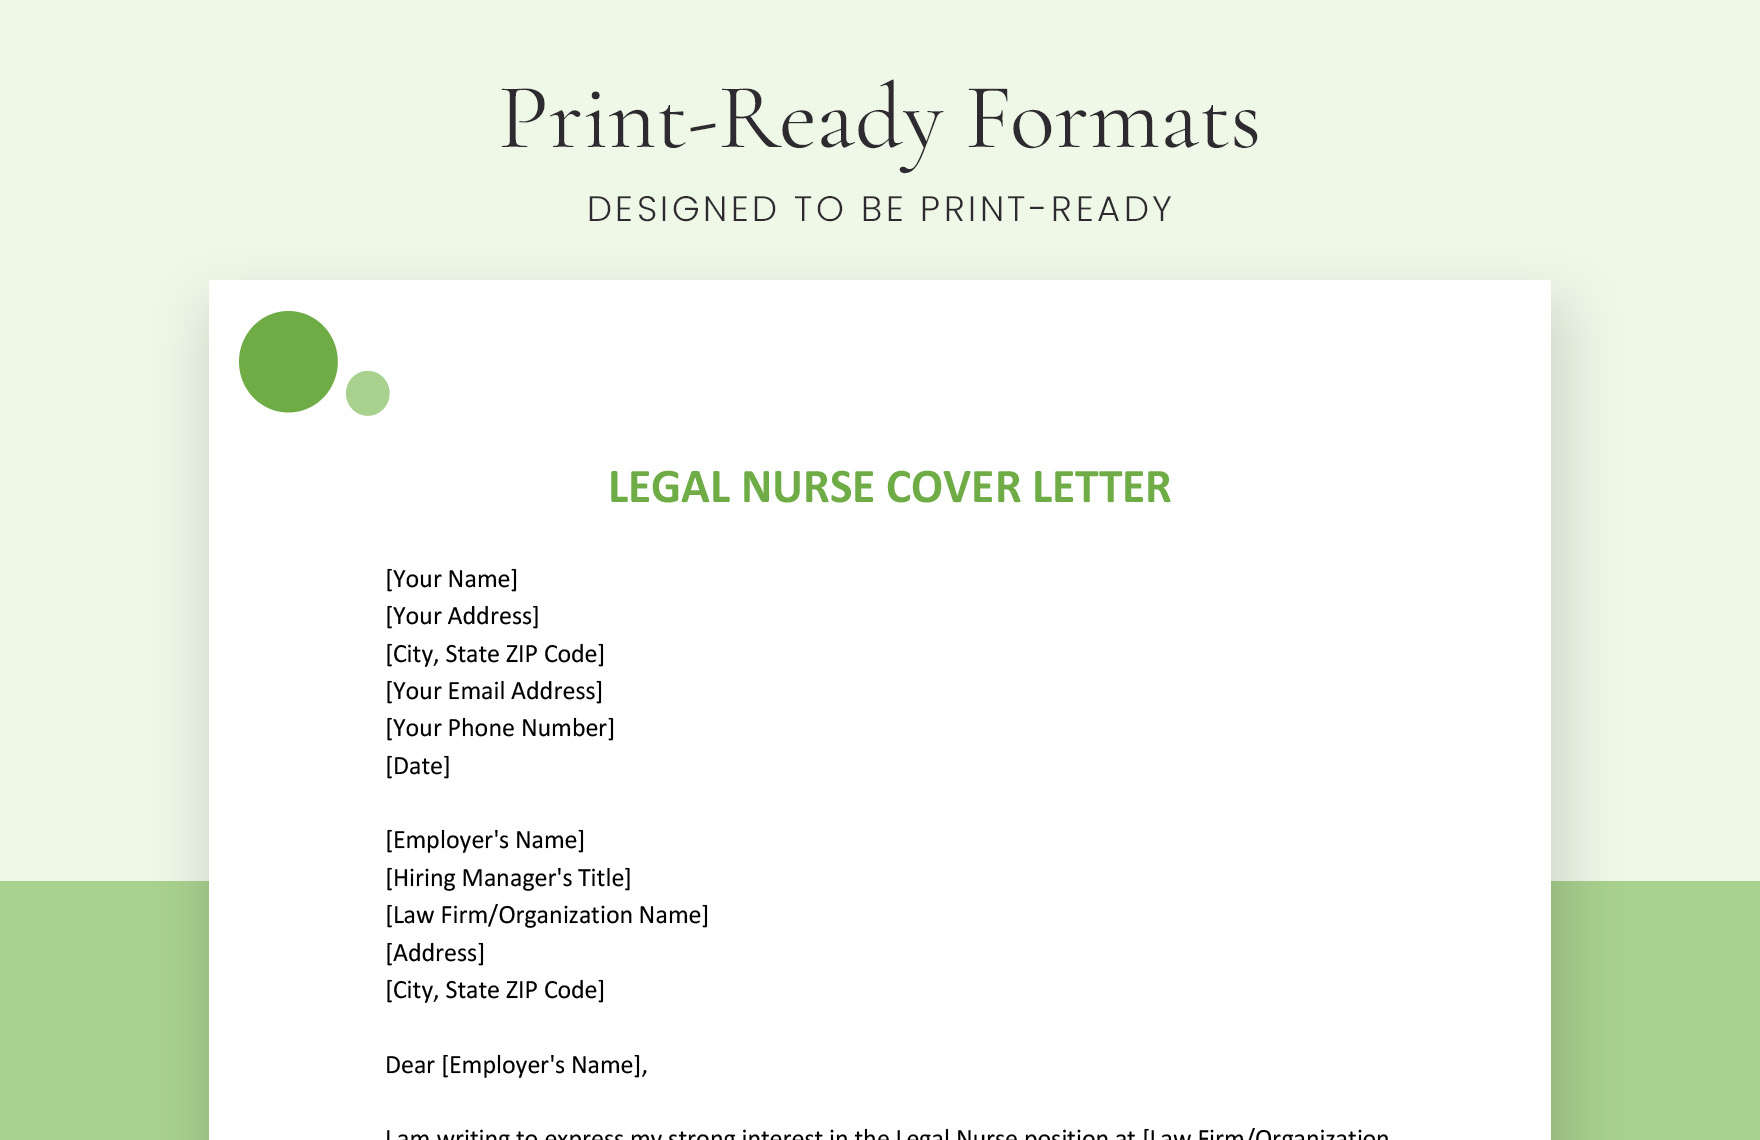 Legal Nurse Cover Letter